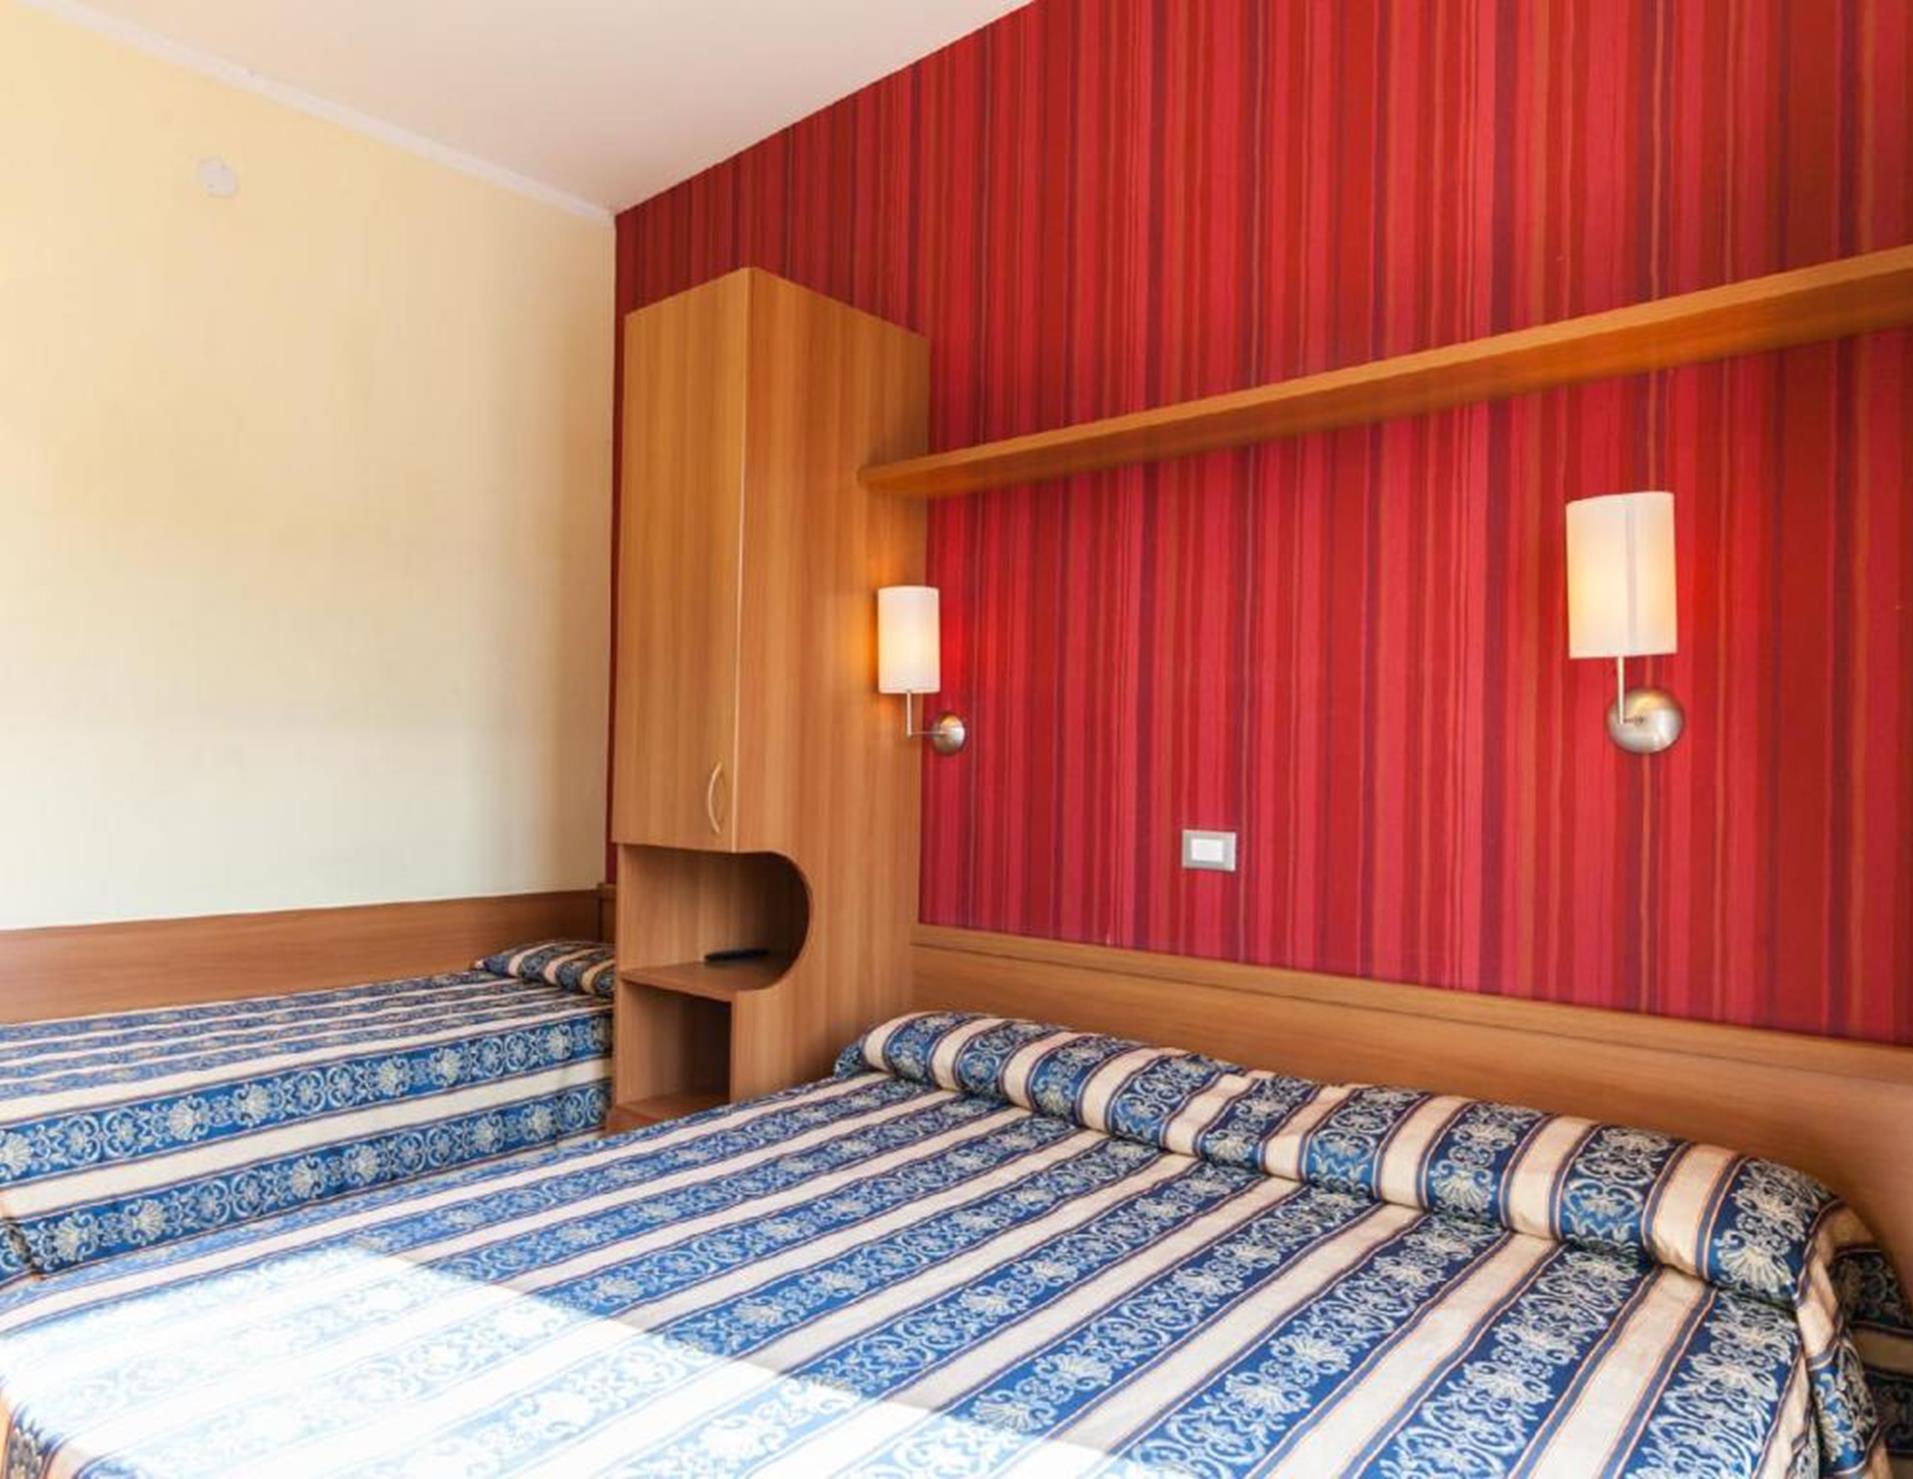 Hotel Promenade Universale - Room 5